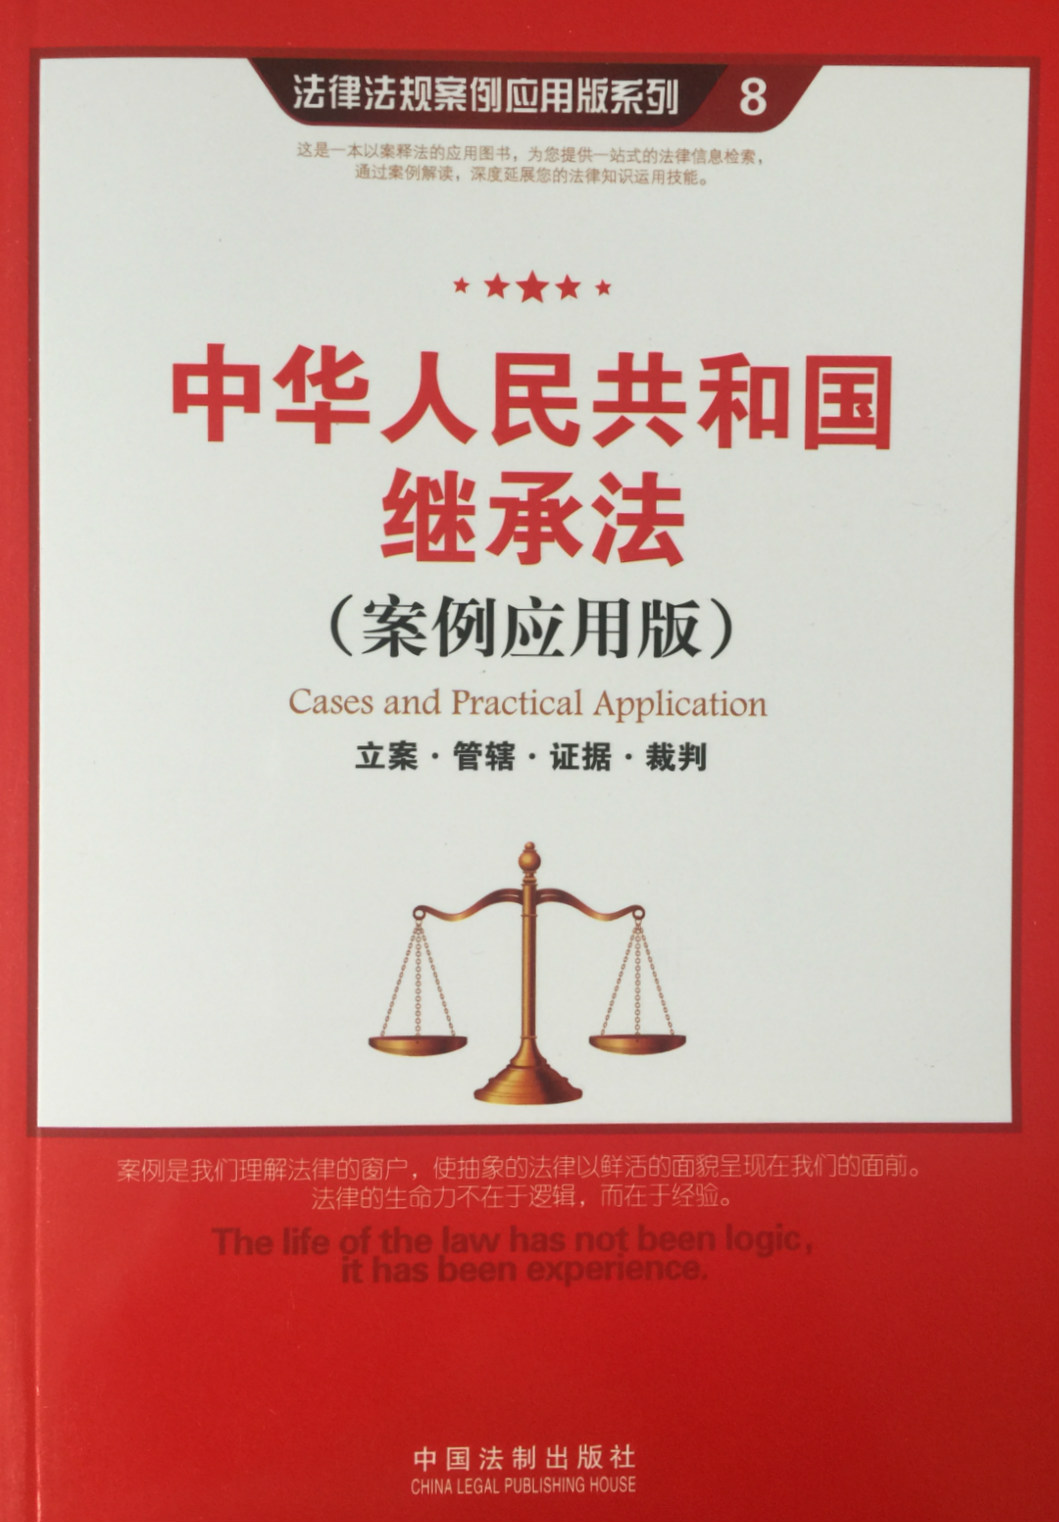 中华人民共和国继承法第25条司法解释可以作